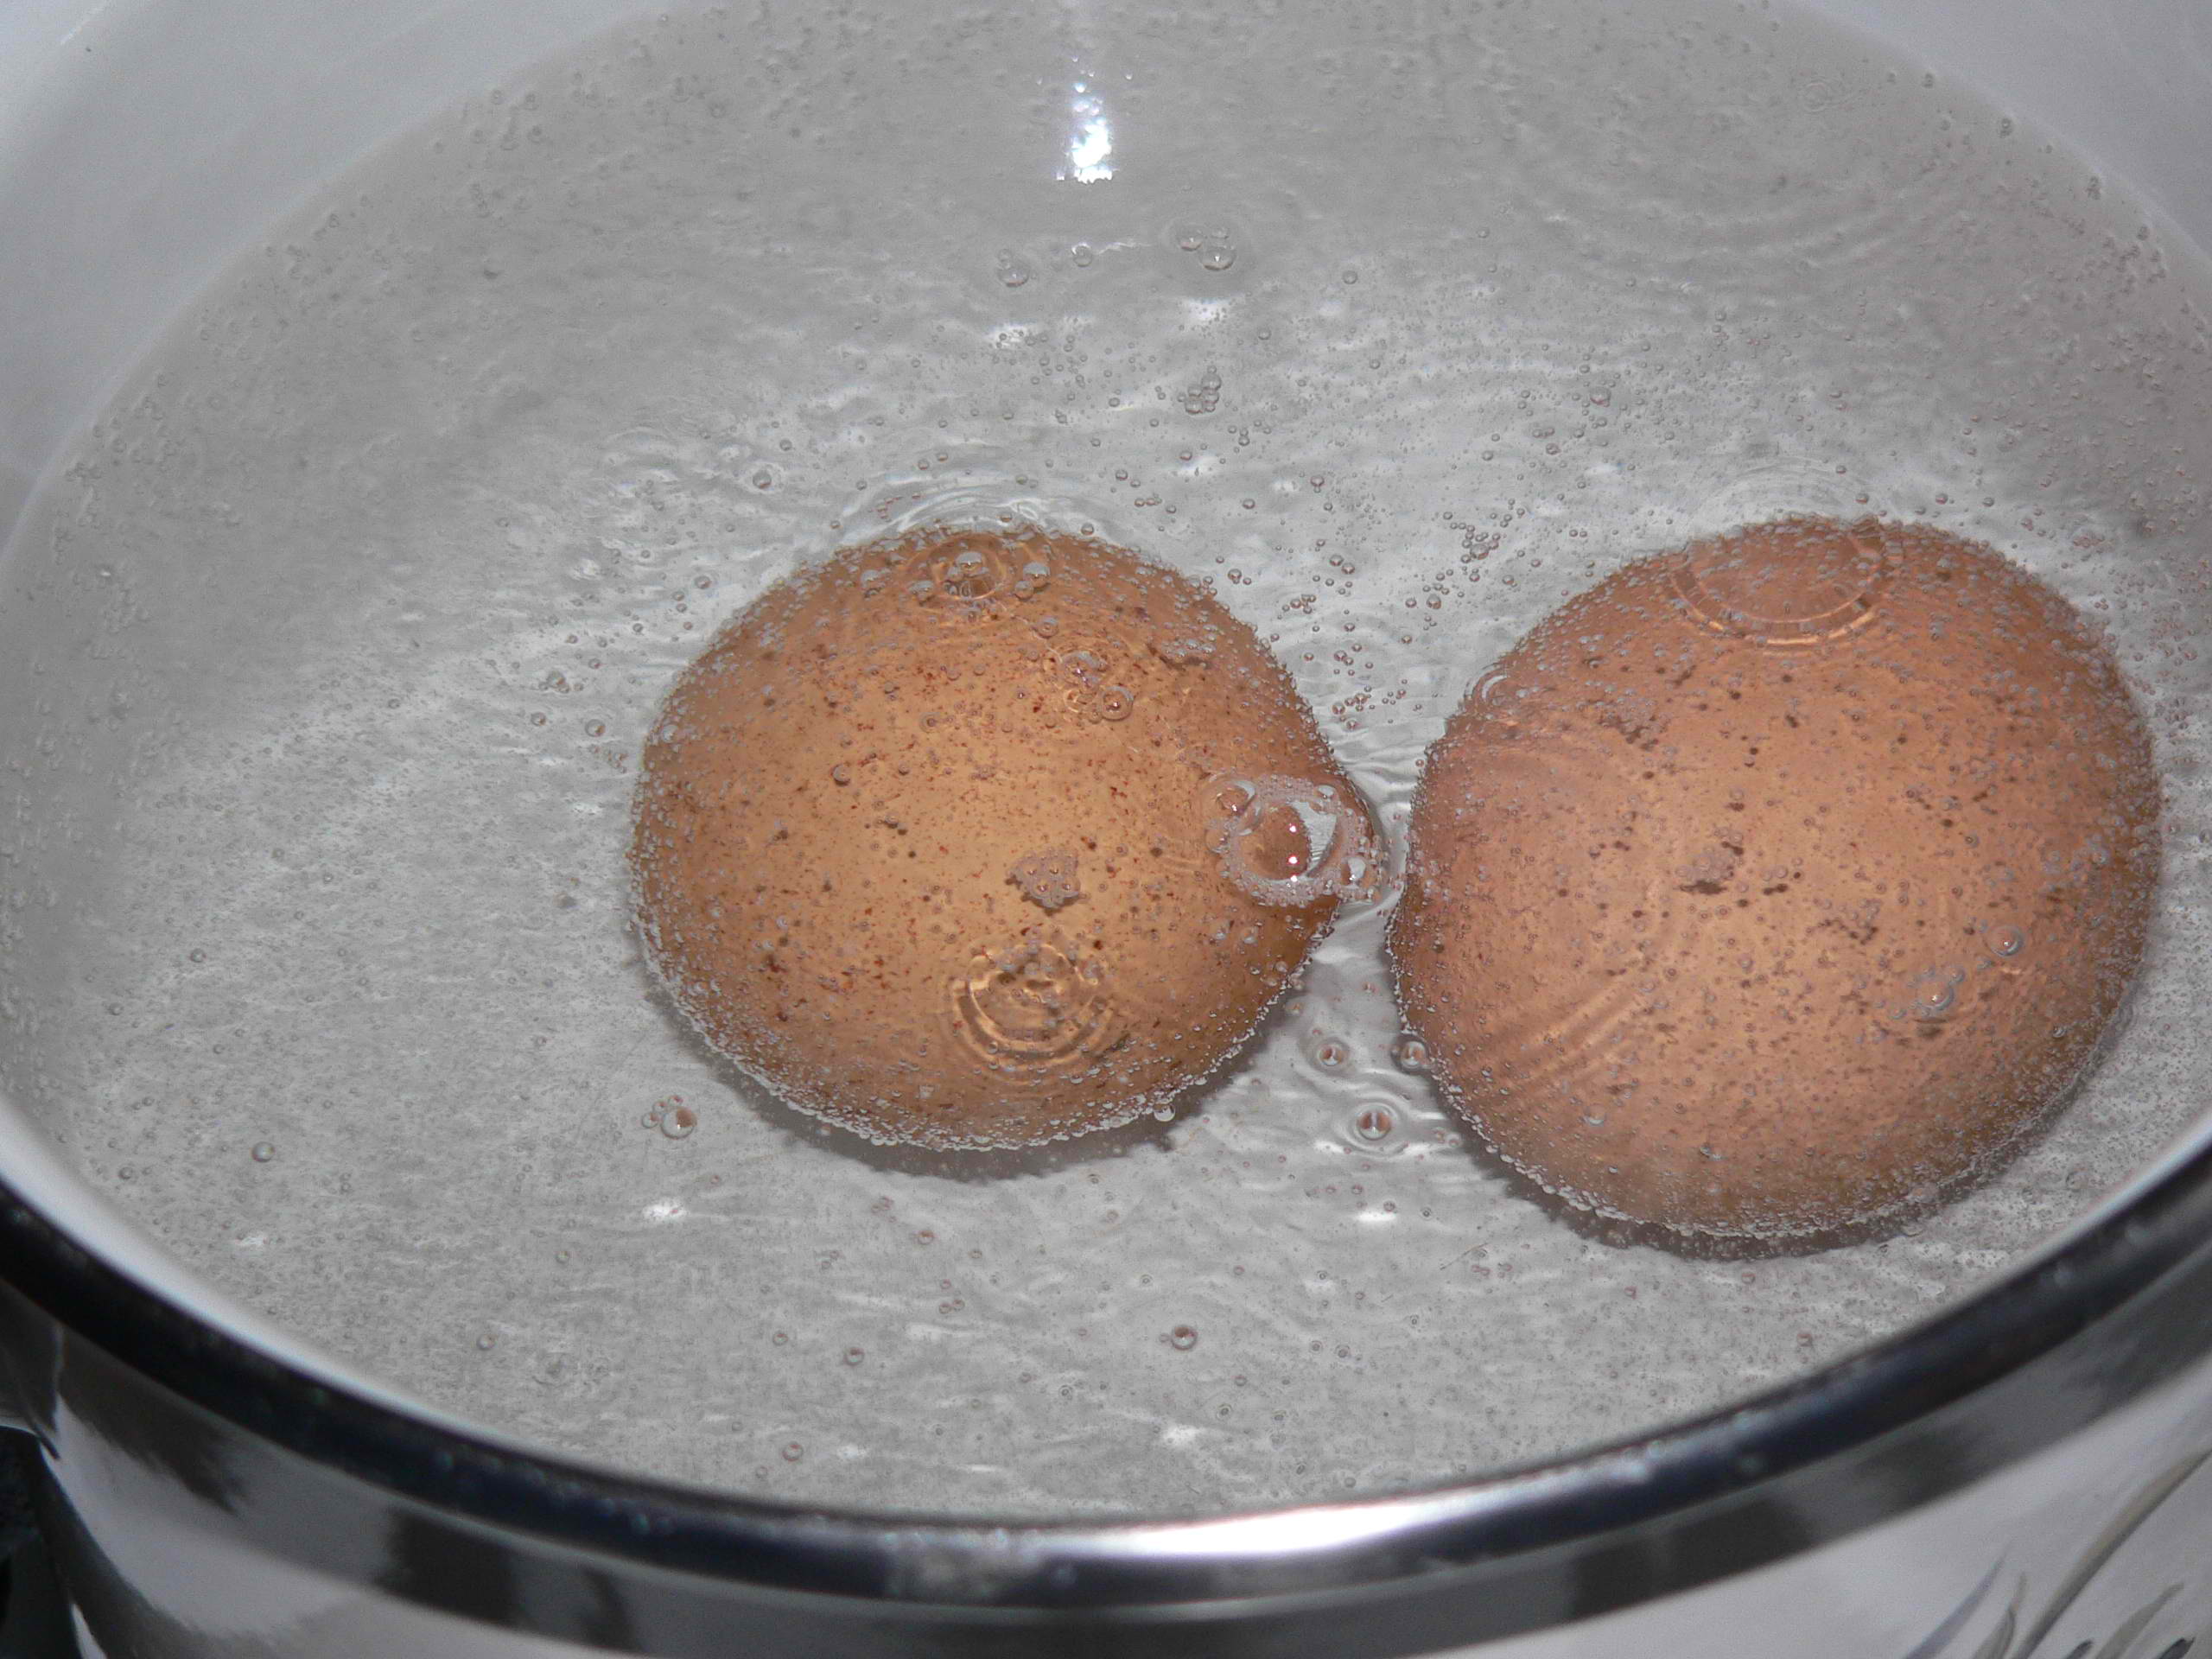 Яйца в холодную или горячую воду